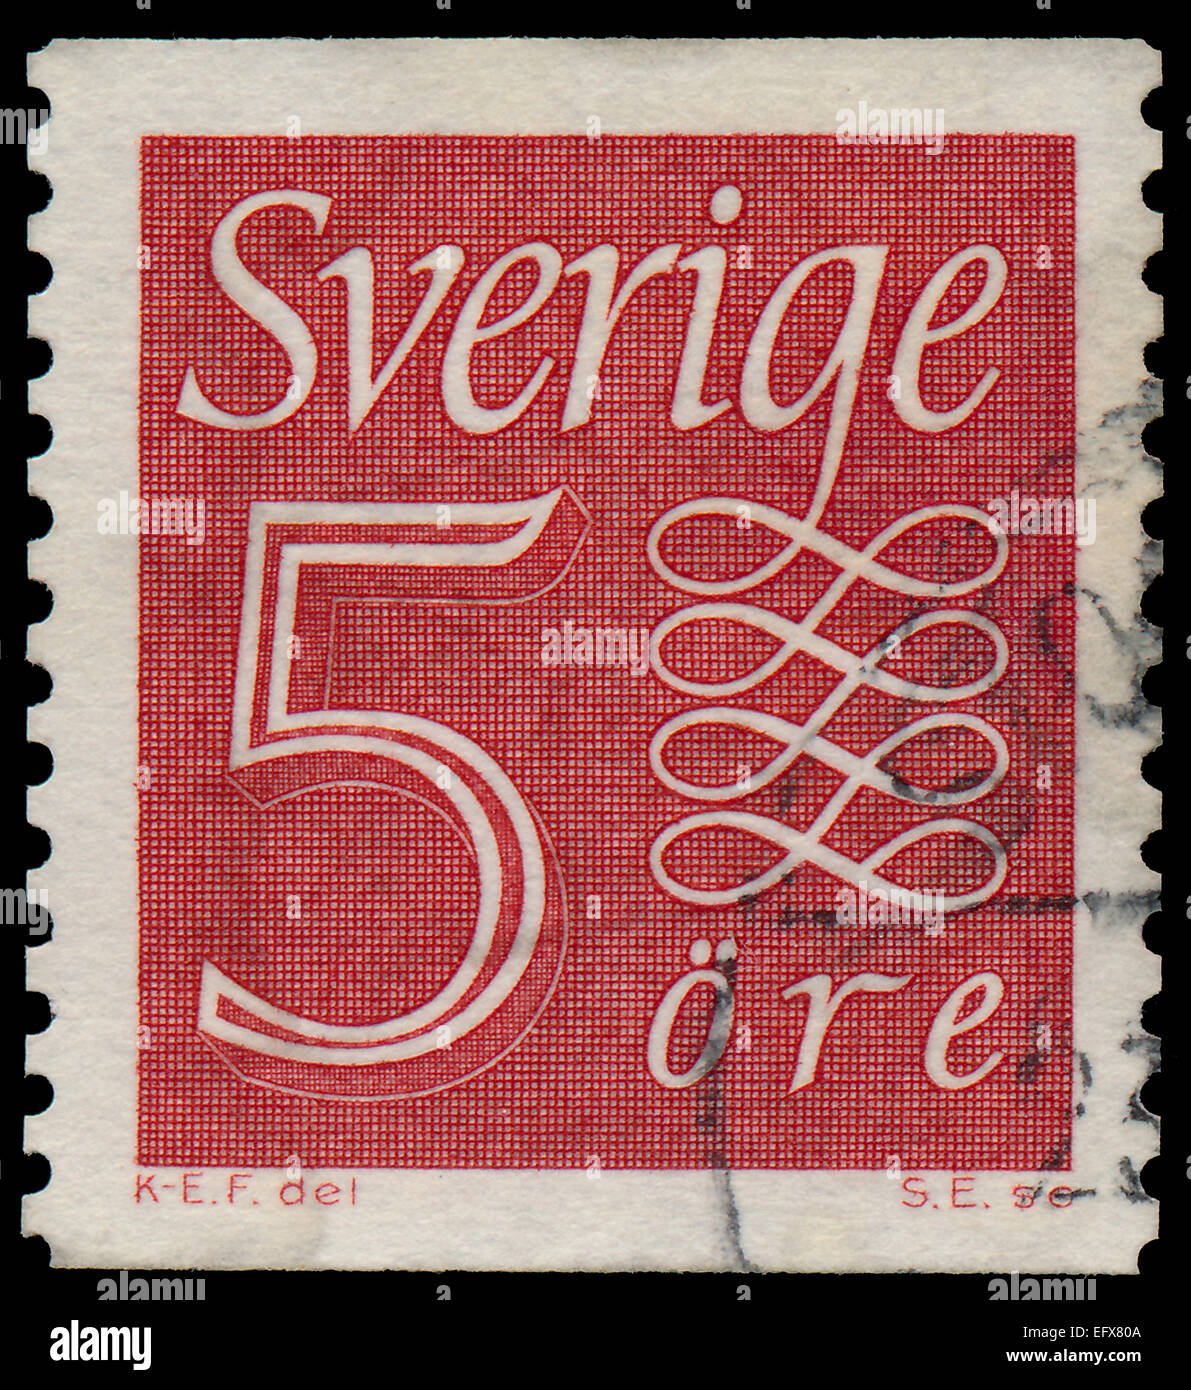 Suède - vers 1957 : un timbre imprimé en Suède, montre Chiffre 5 (lettres en blanc), vers 1957 Banque D'Images